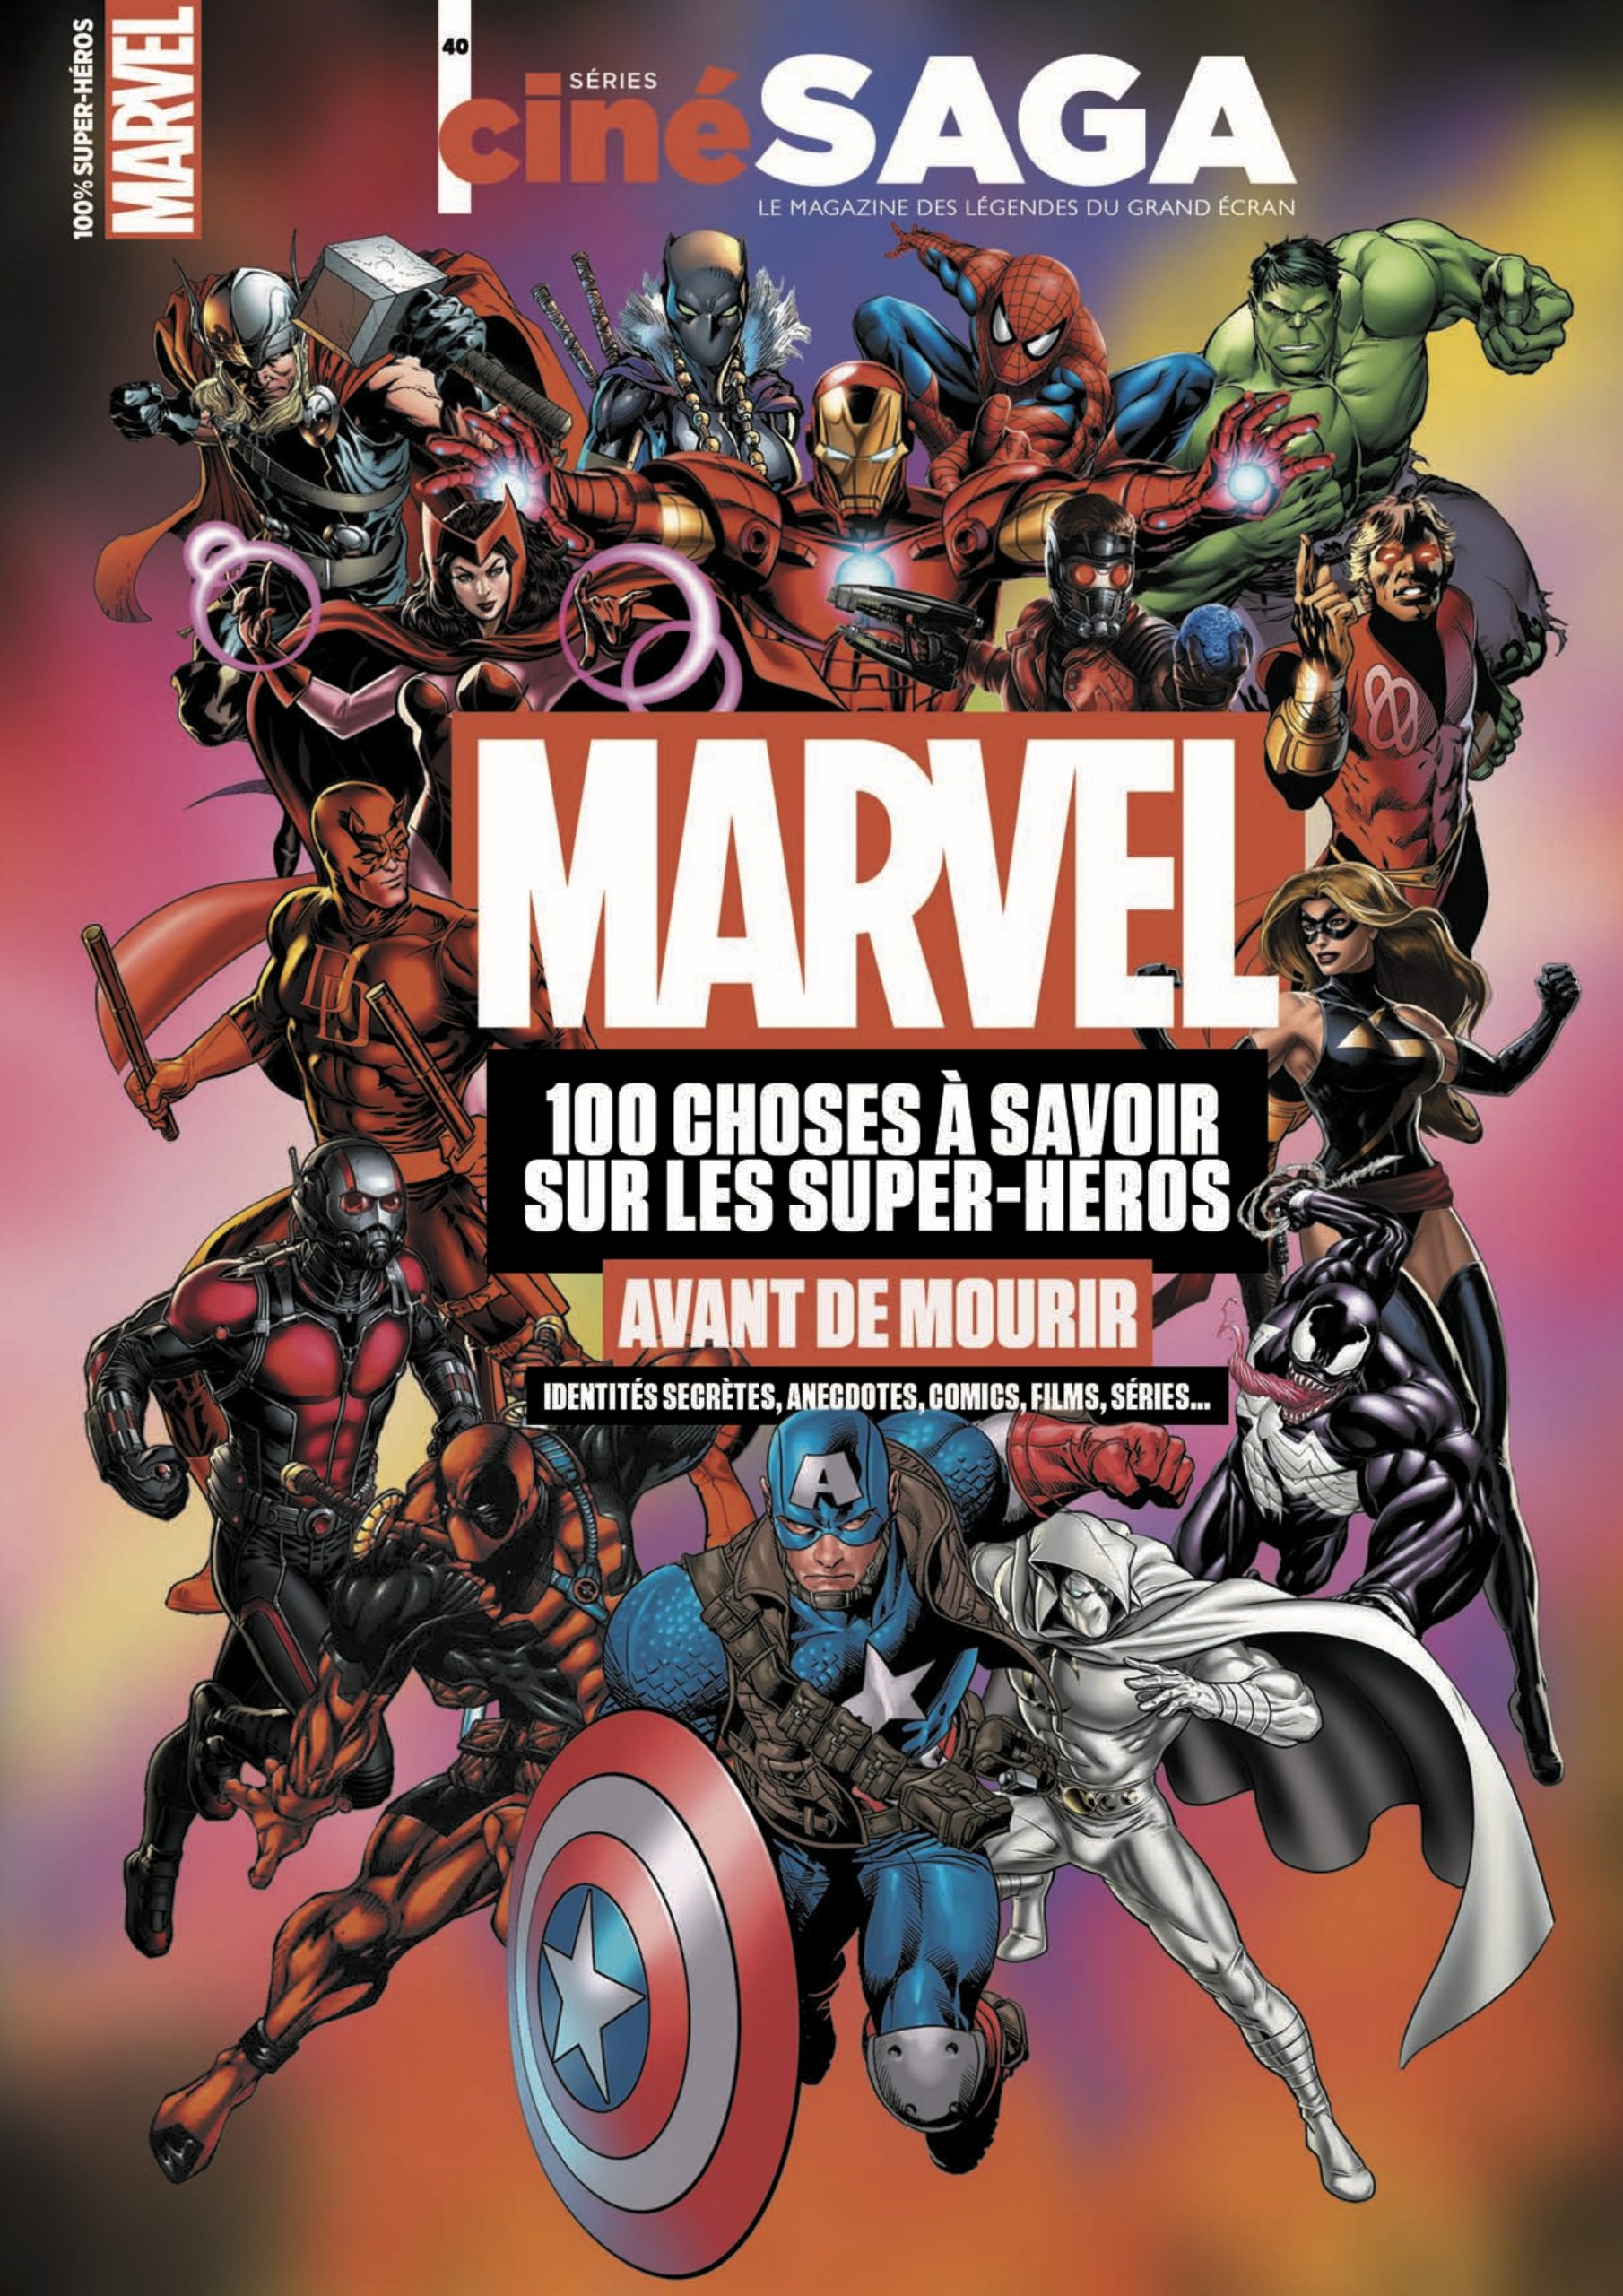 Univers Marvel : les personnages principaux à connaître